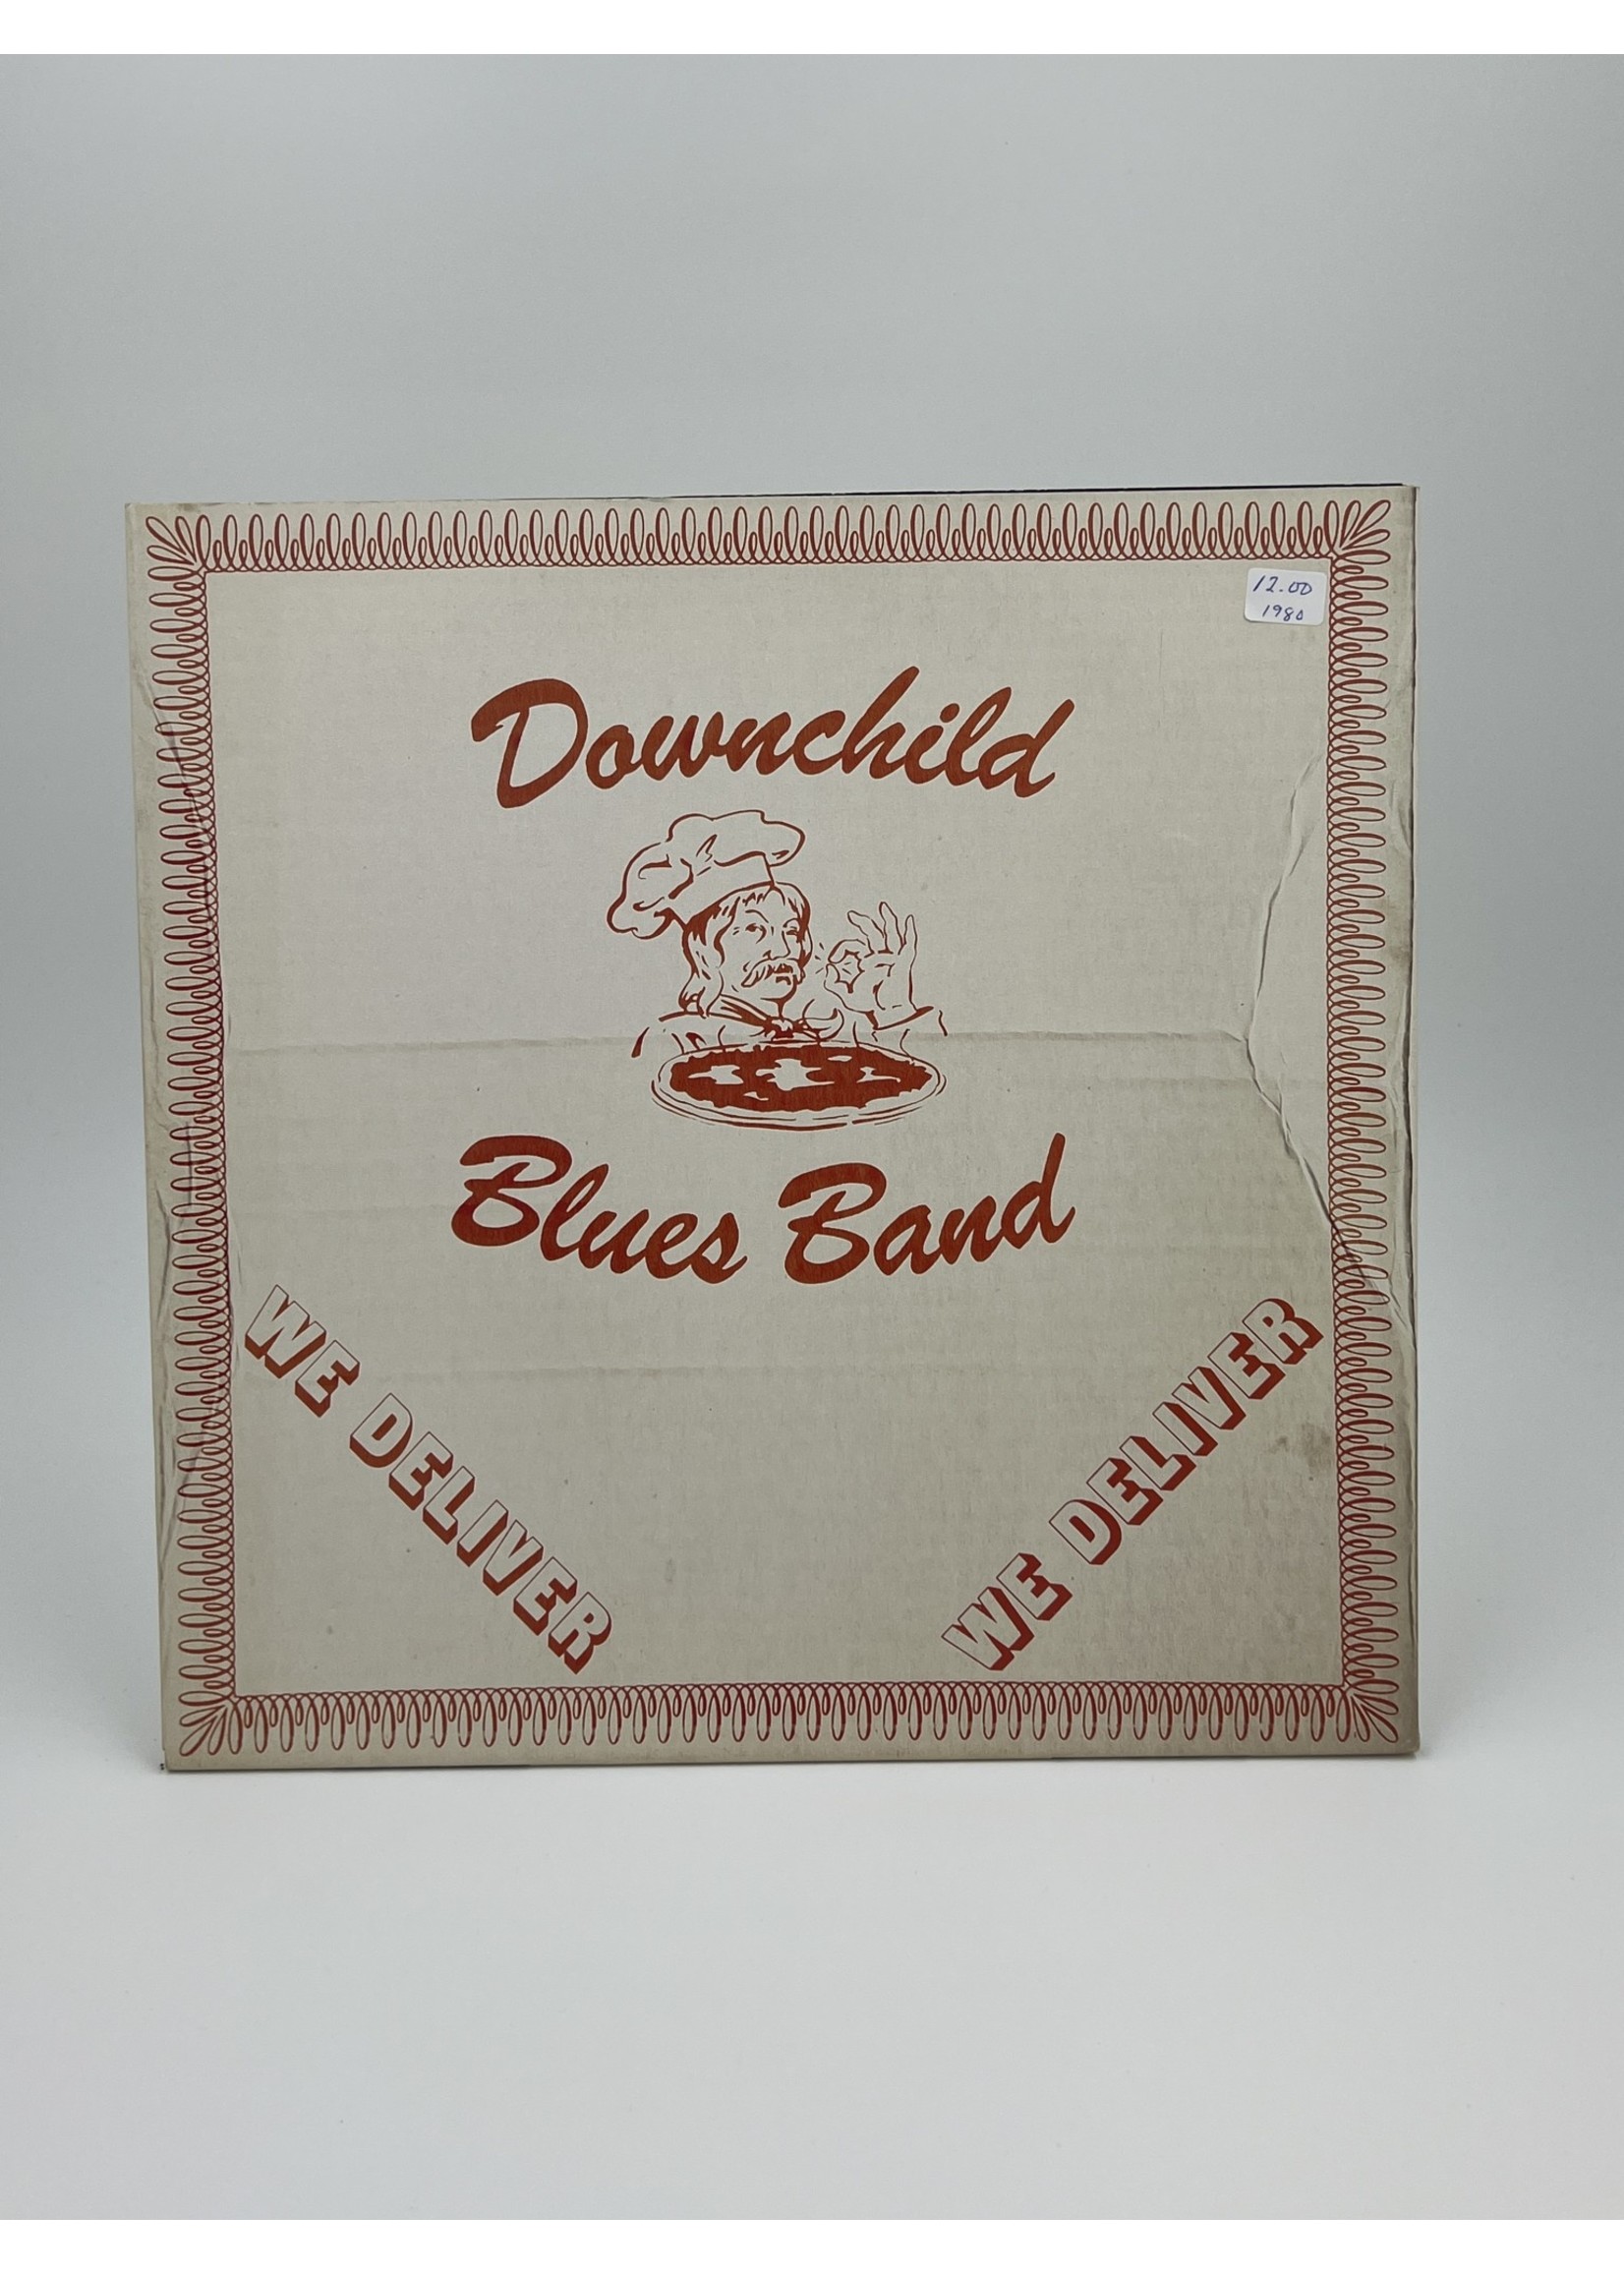 LP Downchild Blues Band We Deliver LP Record